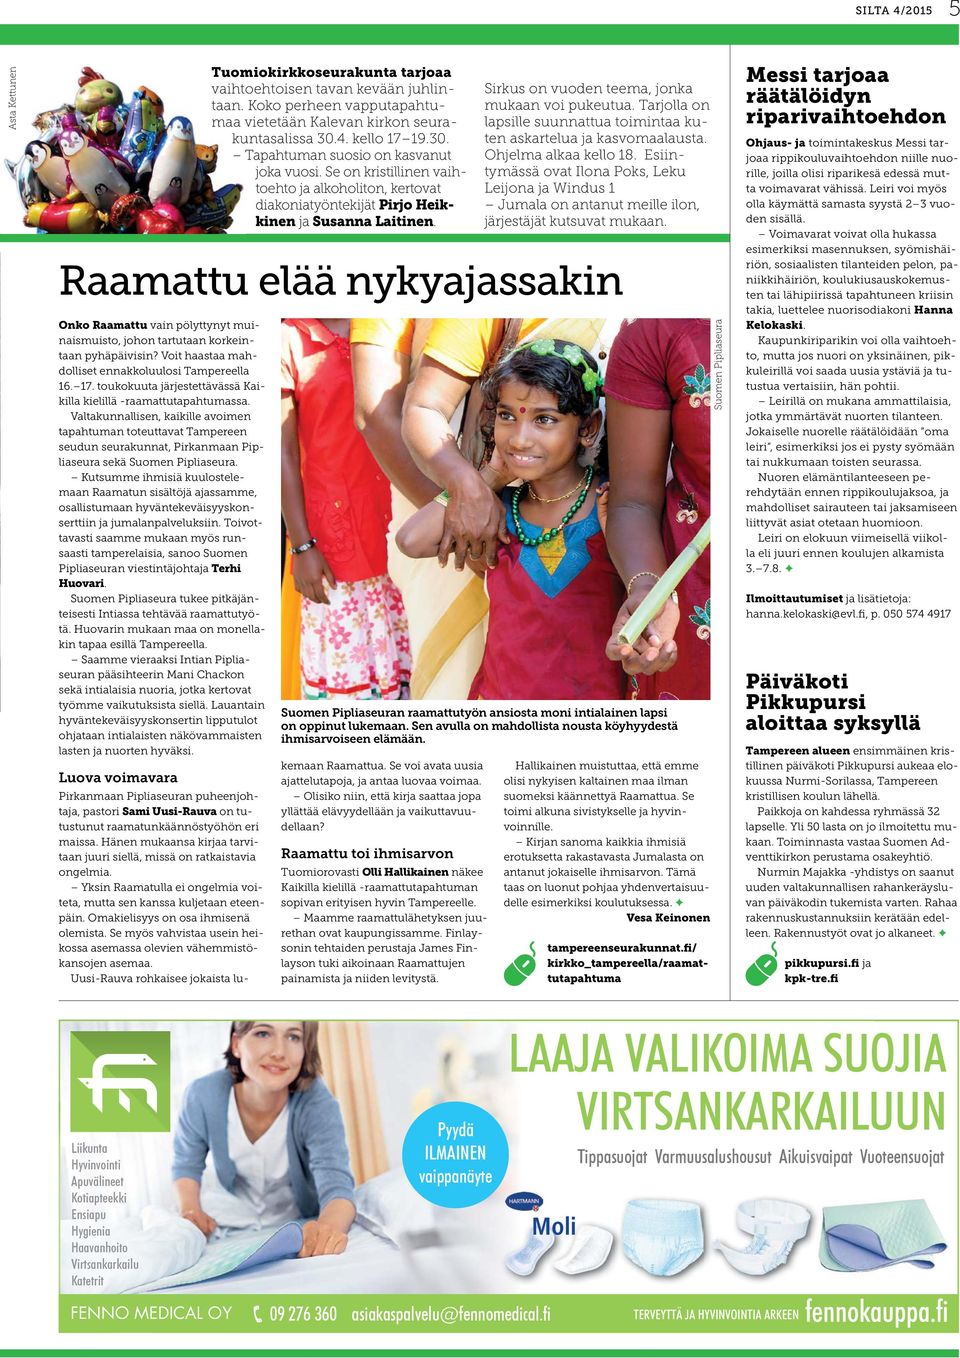 Valtakunnallisen, kaikille avoimen tapahtuman toteuttavat Tampereen seudun seurakunnat, Pirkanmaan Pipliaseura sekä Suomen Pipliaseura.